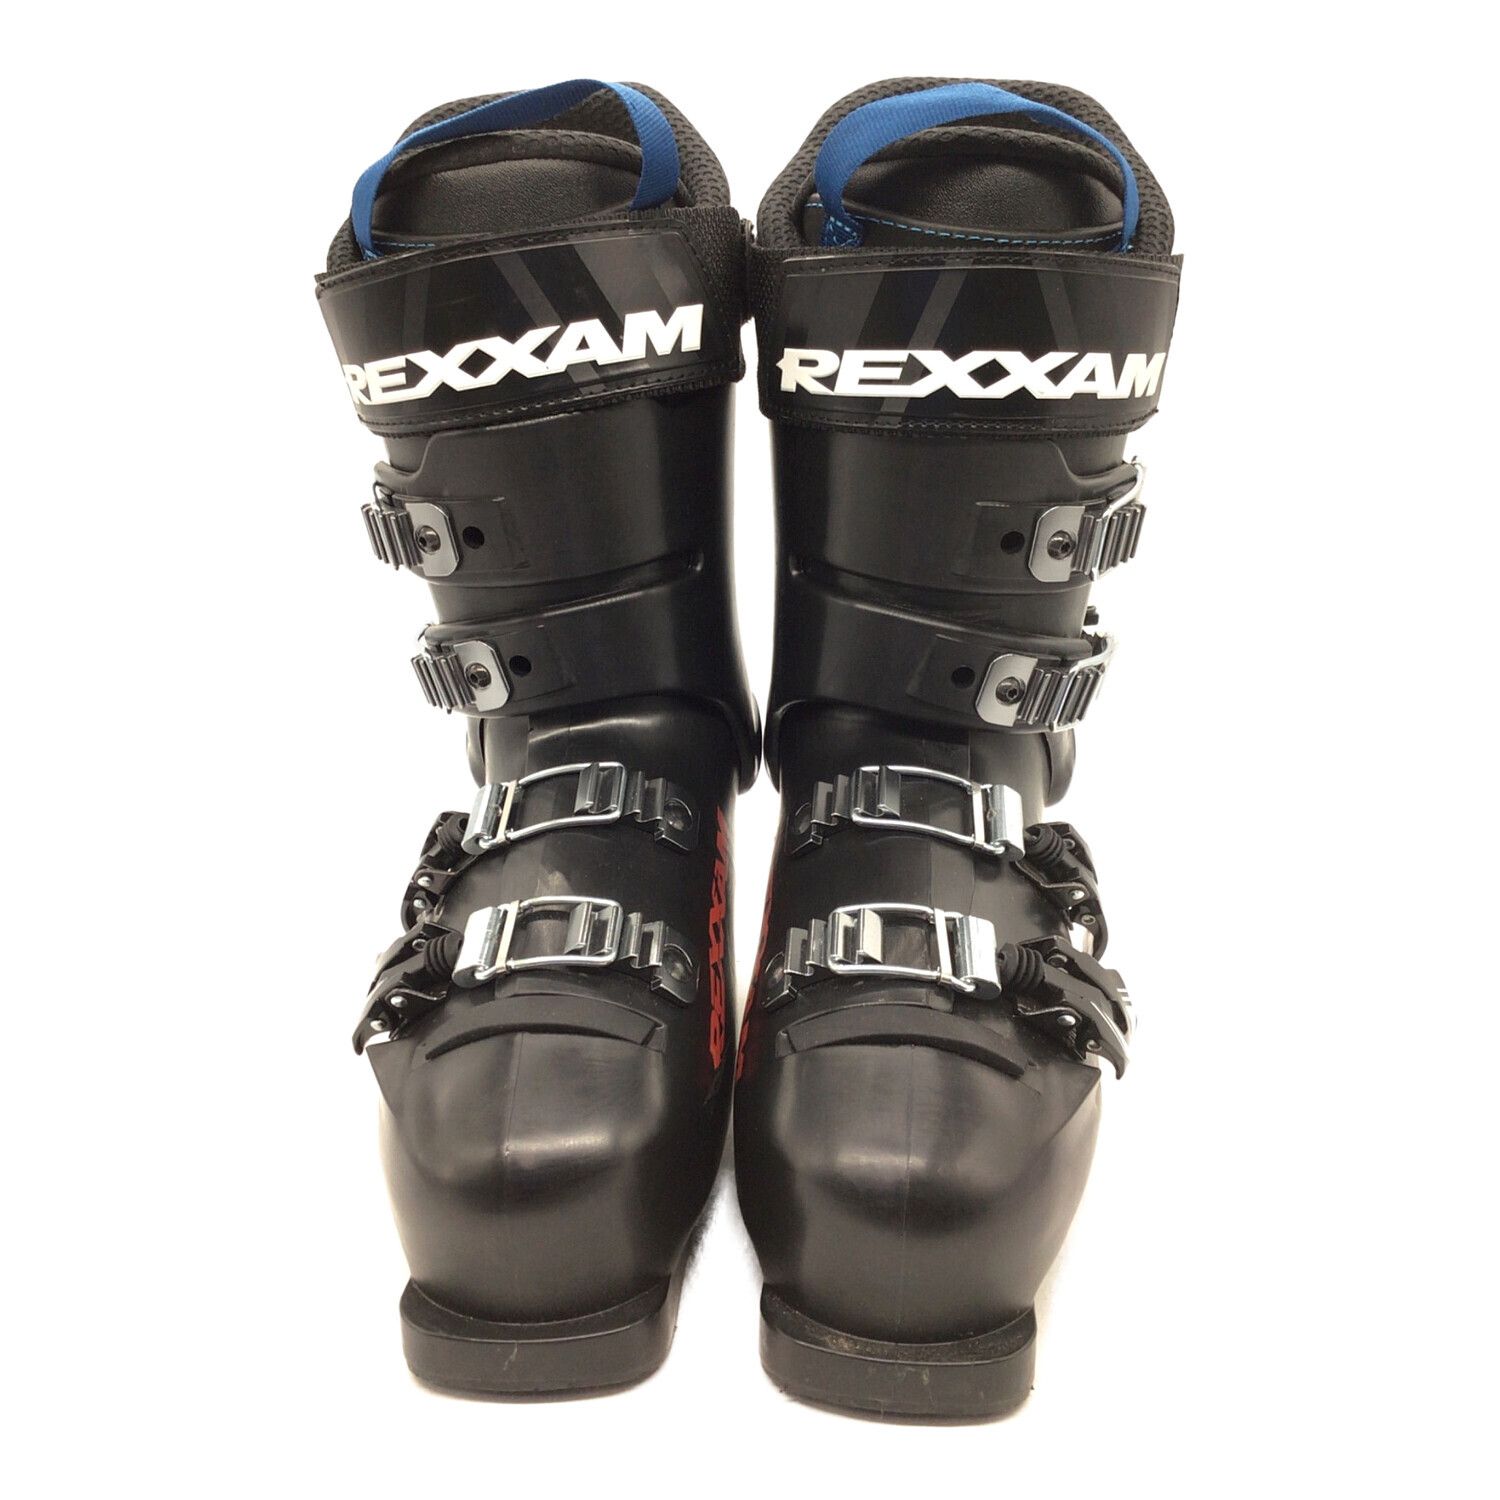 REXXAM (レグザム) スキーブーツ メンズ SIZE 25cm ブラック クロス 